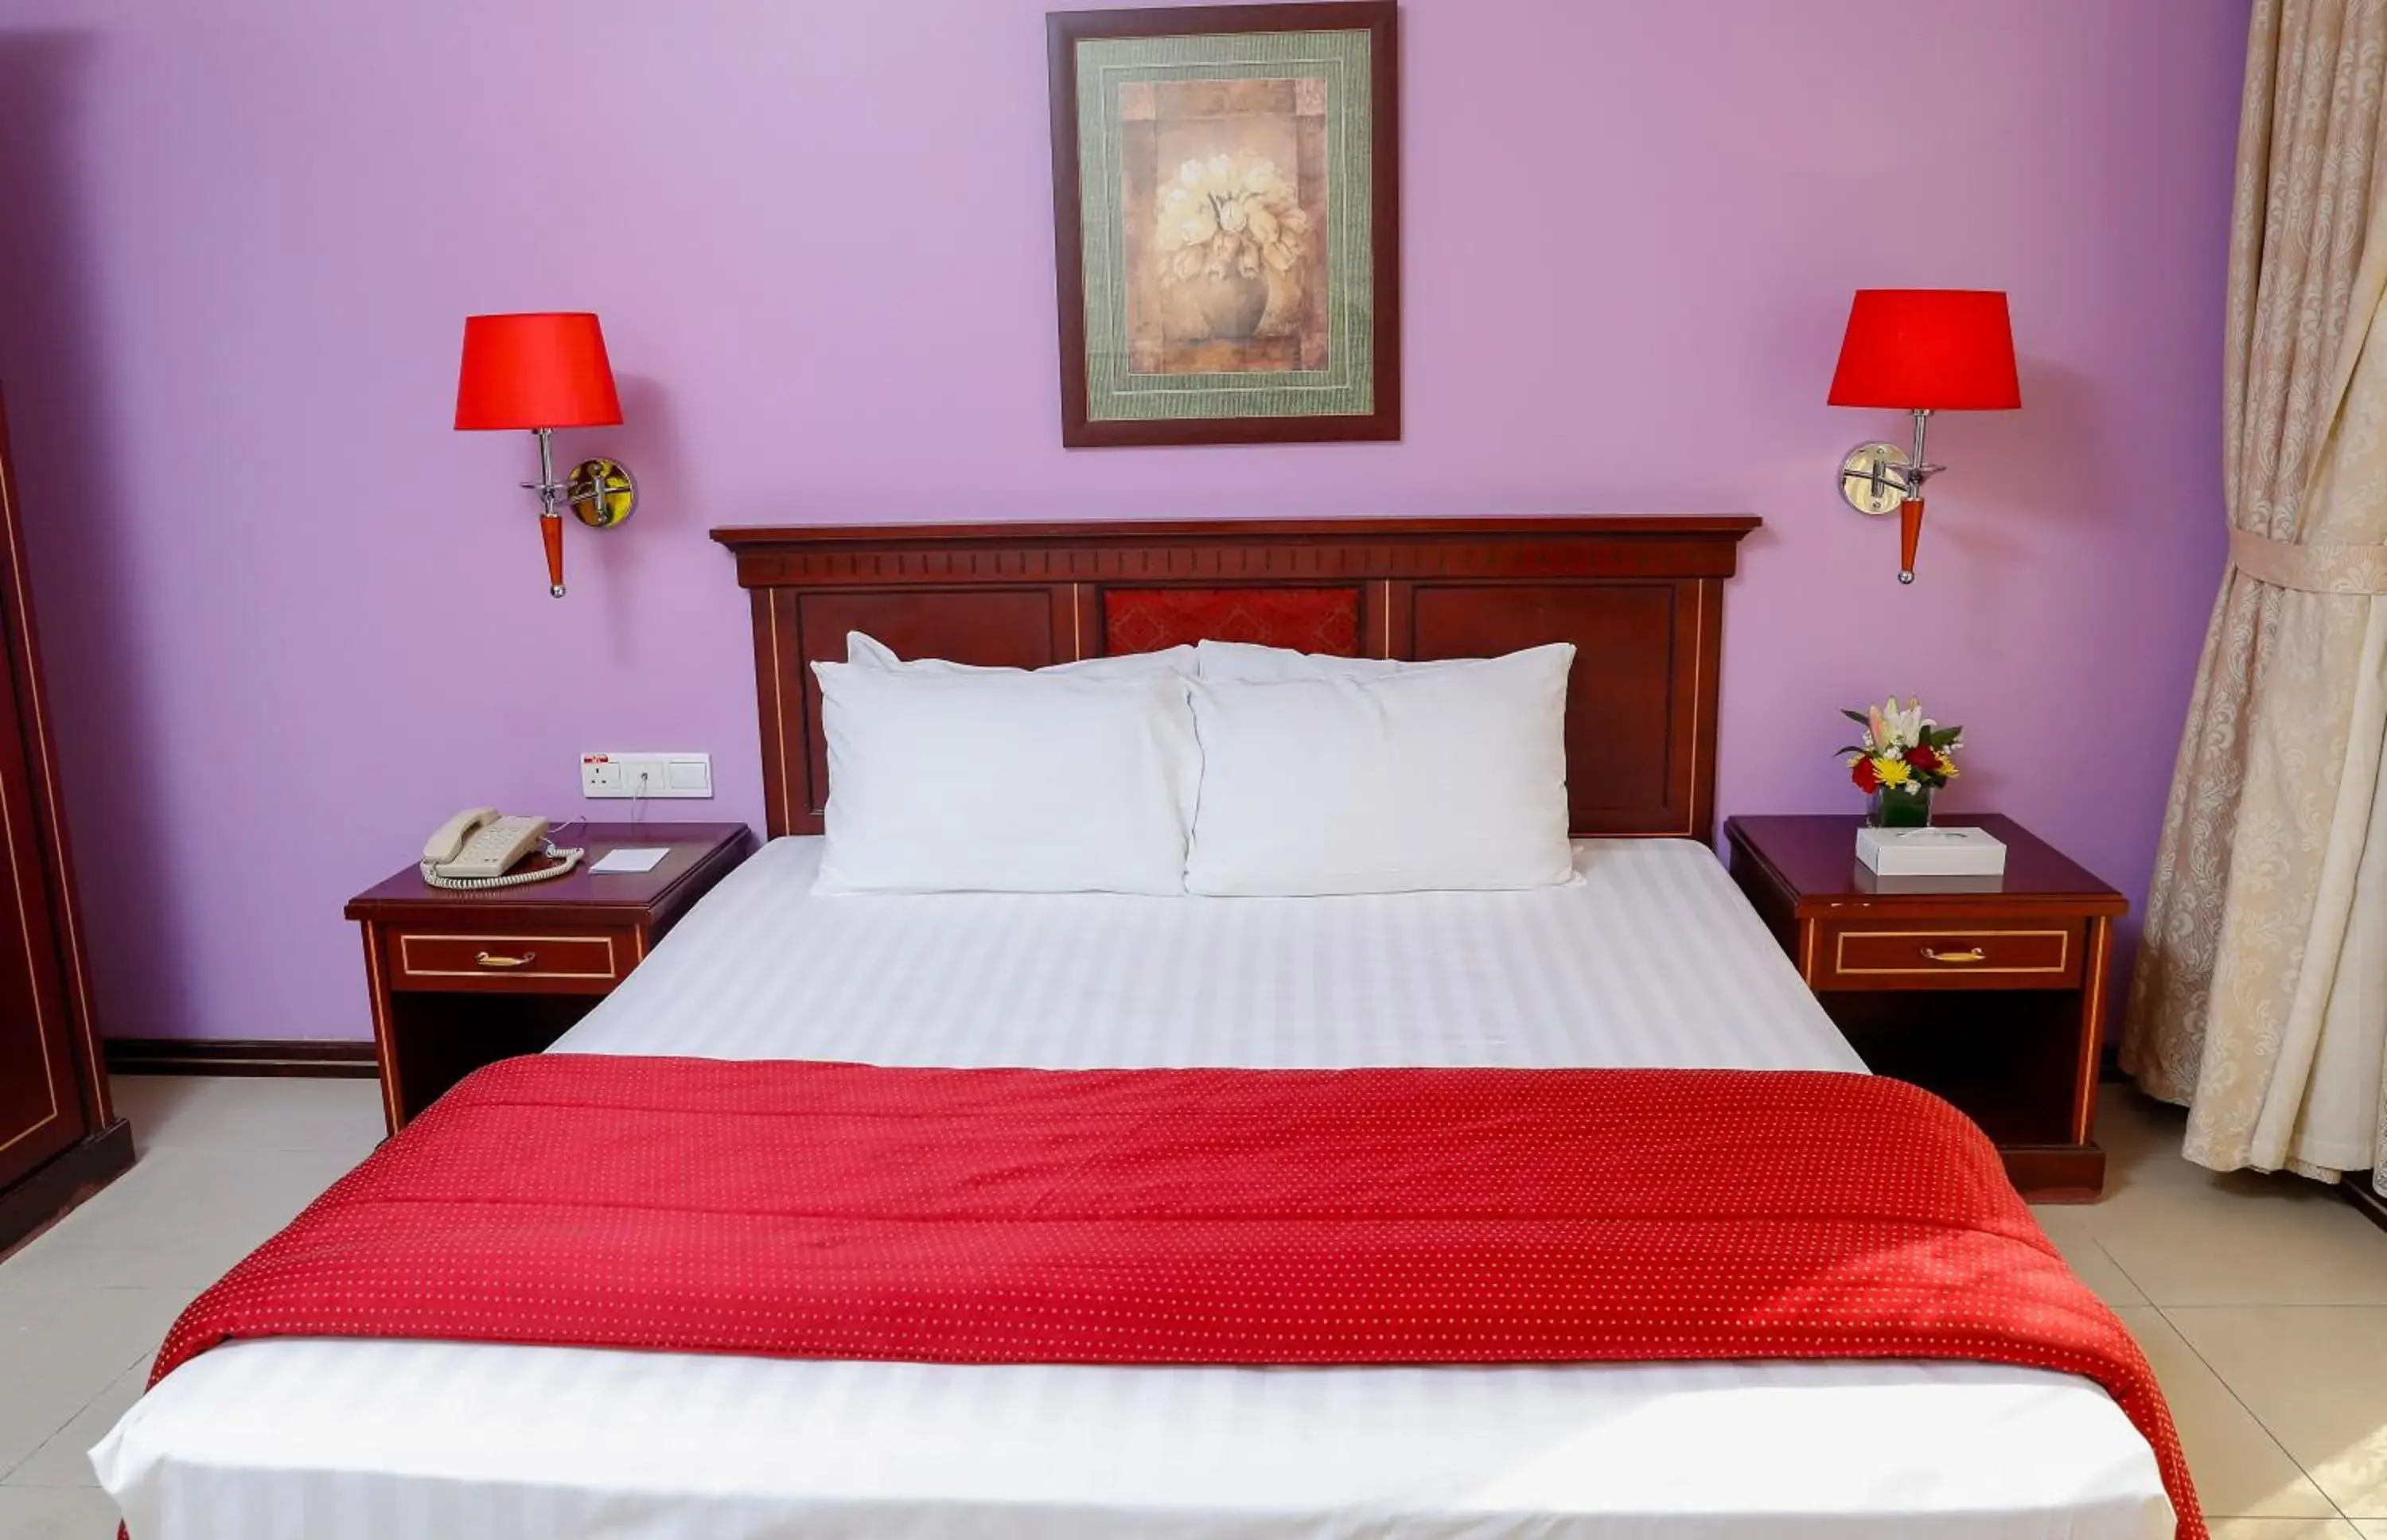 Bed in Taj Plaza Hotel